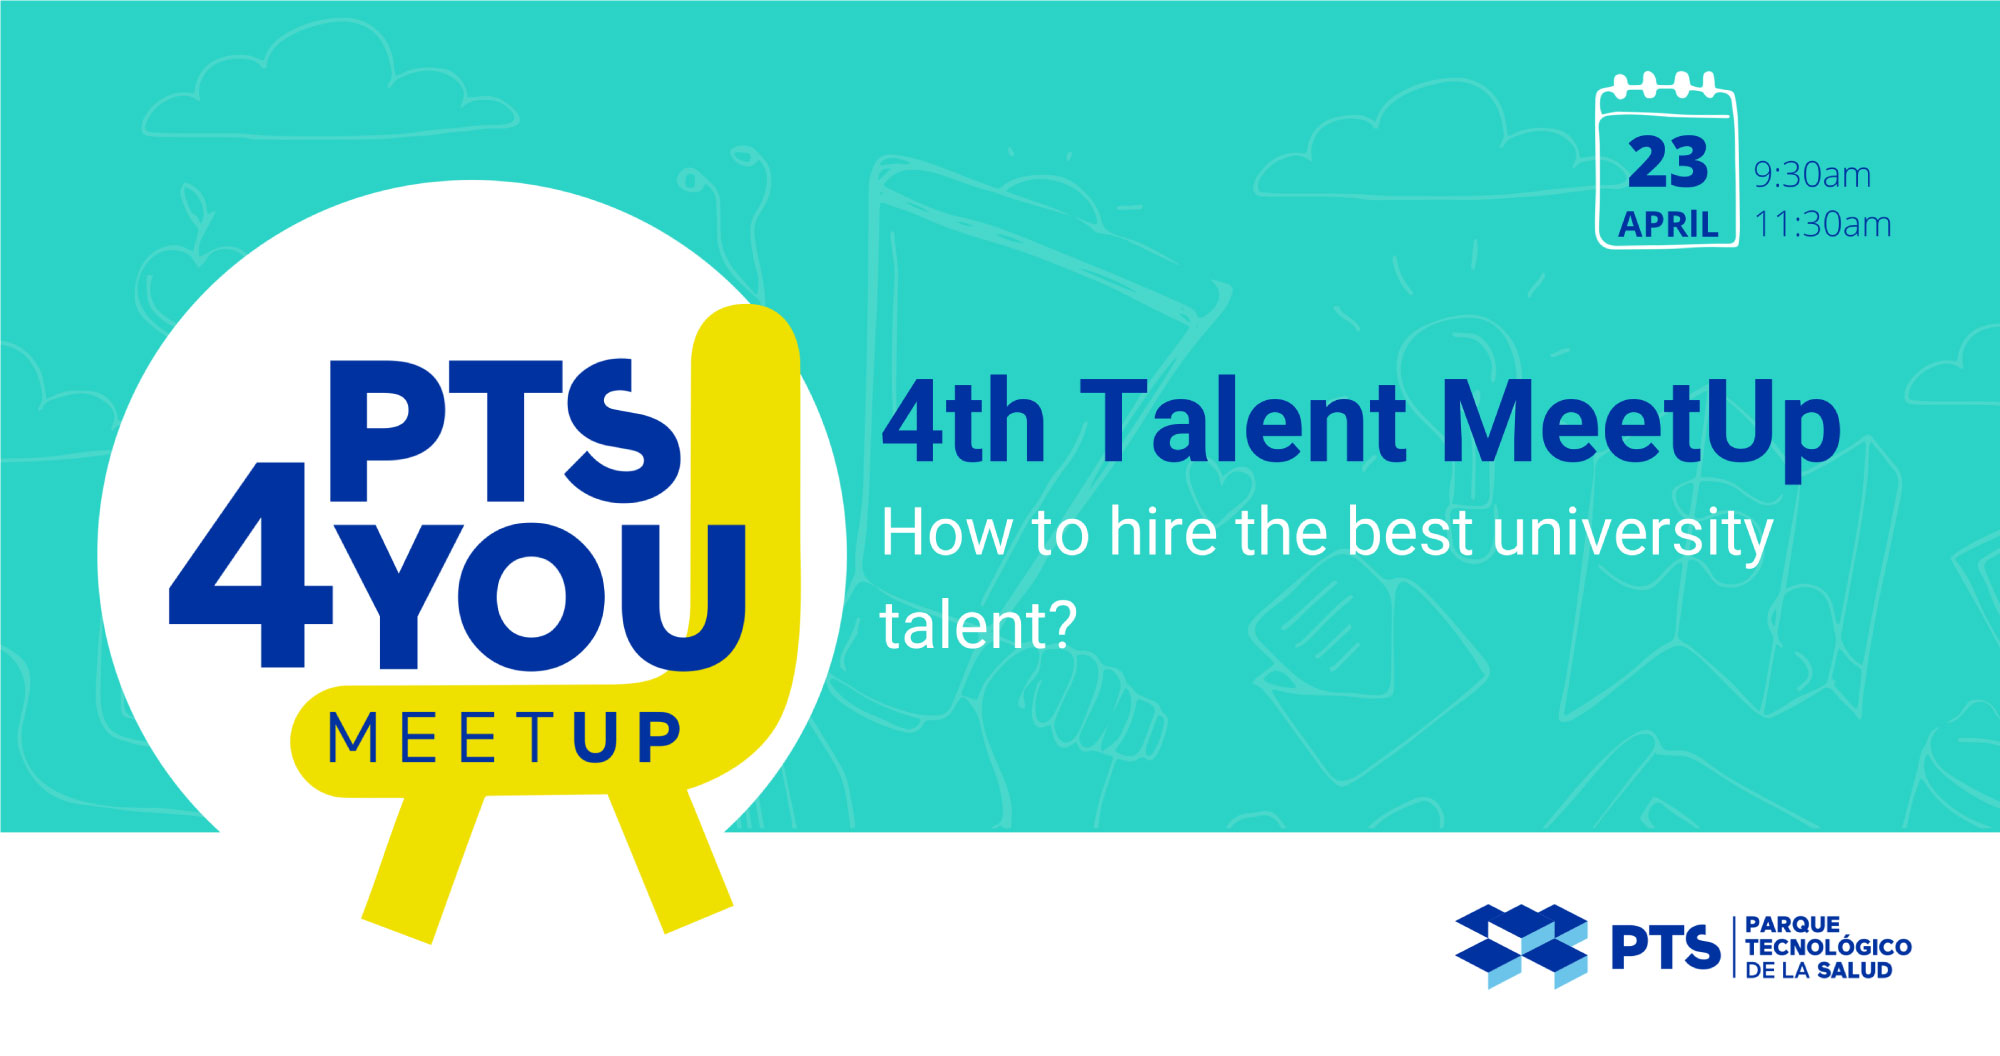 4th Talent MeetUp | PTS - Parque Tecnológico de la Salud